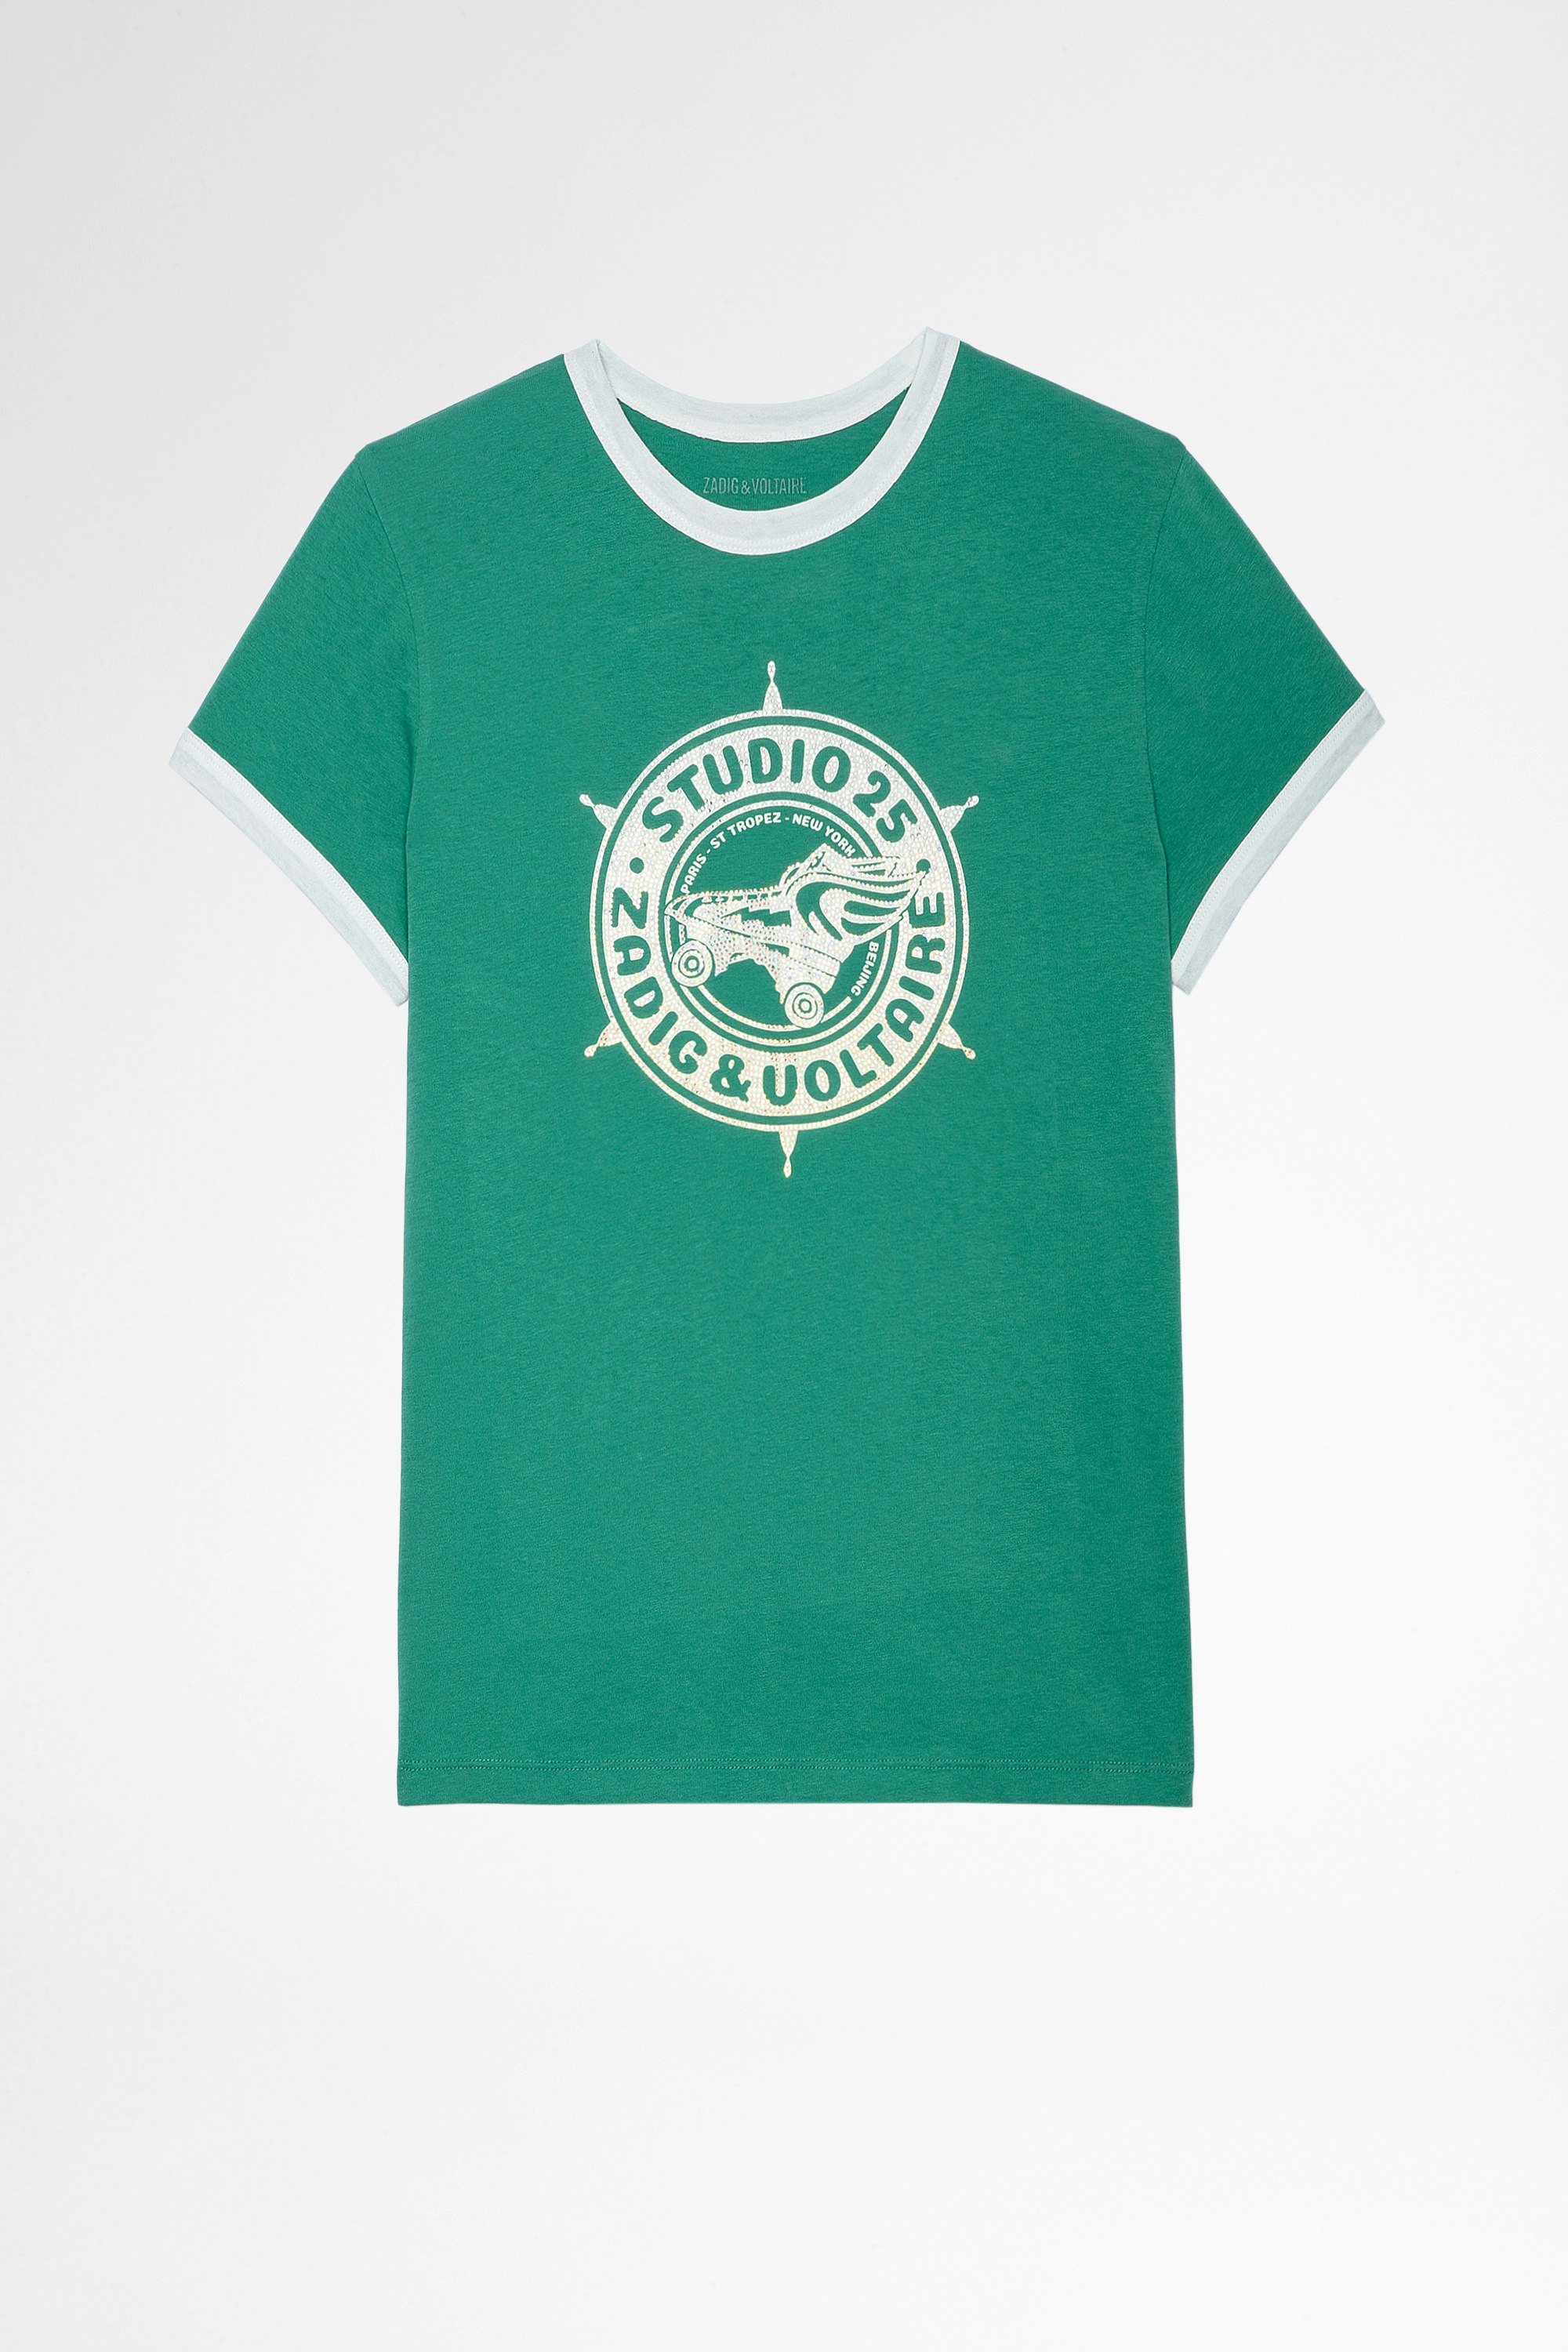 T-shirt Zoe Studio 25 Strass T-shirt aus grüner Baumwolle mit Studio 25 Print mit Kristallen für Damen